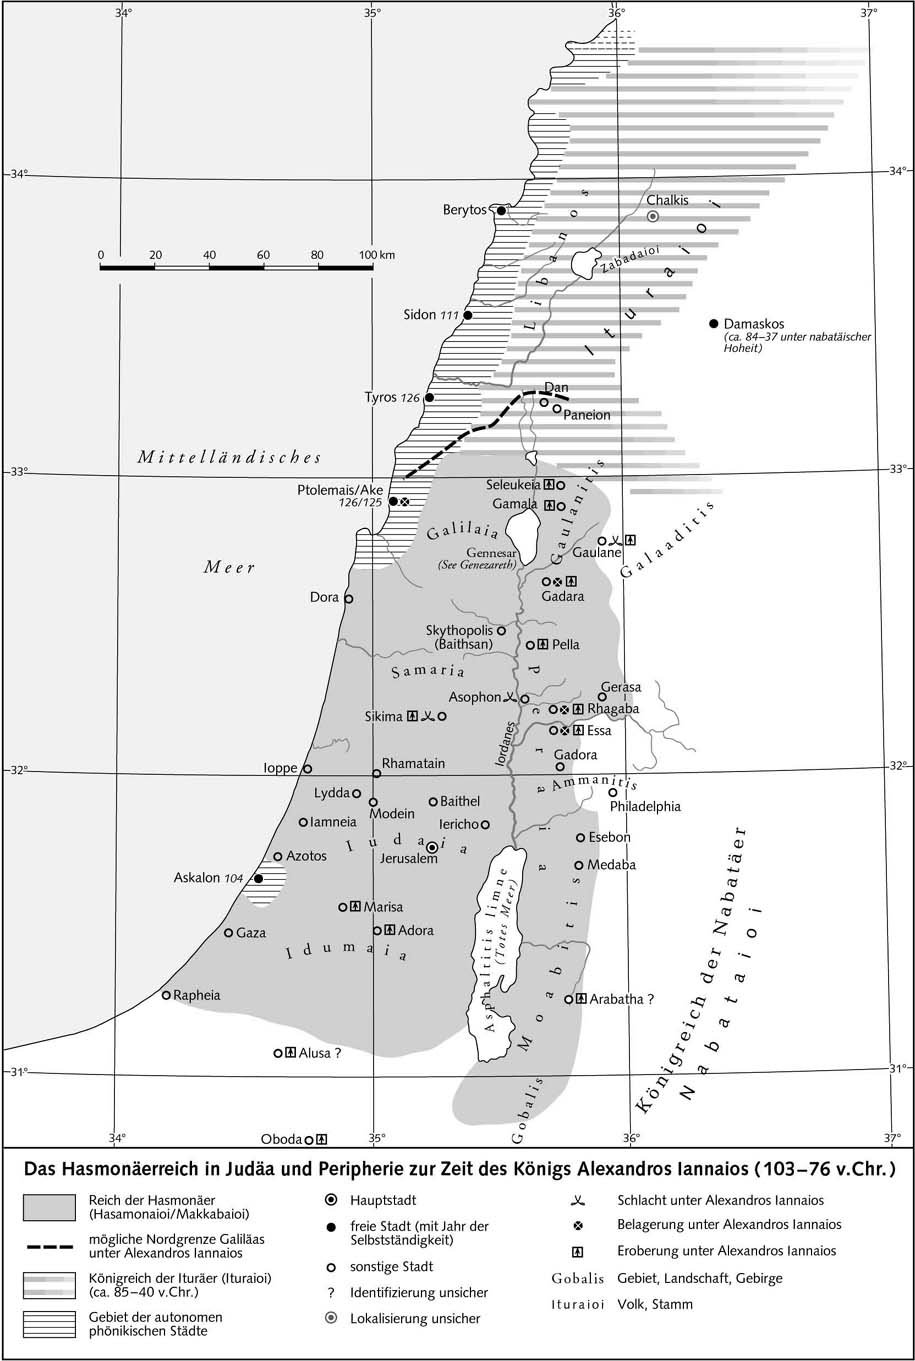 Хасмонейское царство в Иудее и периферия во время царствования Александра Яная (103-76 гг. до н.э.)